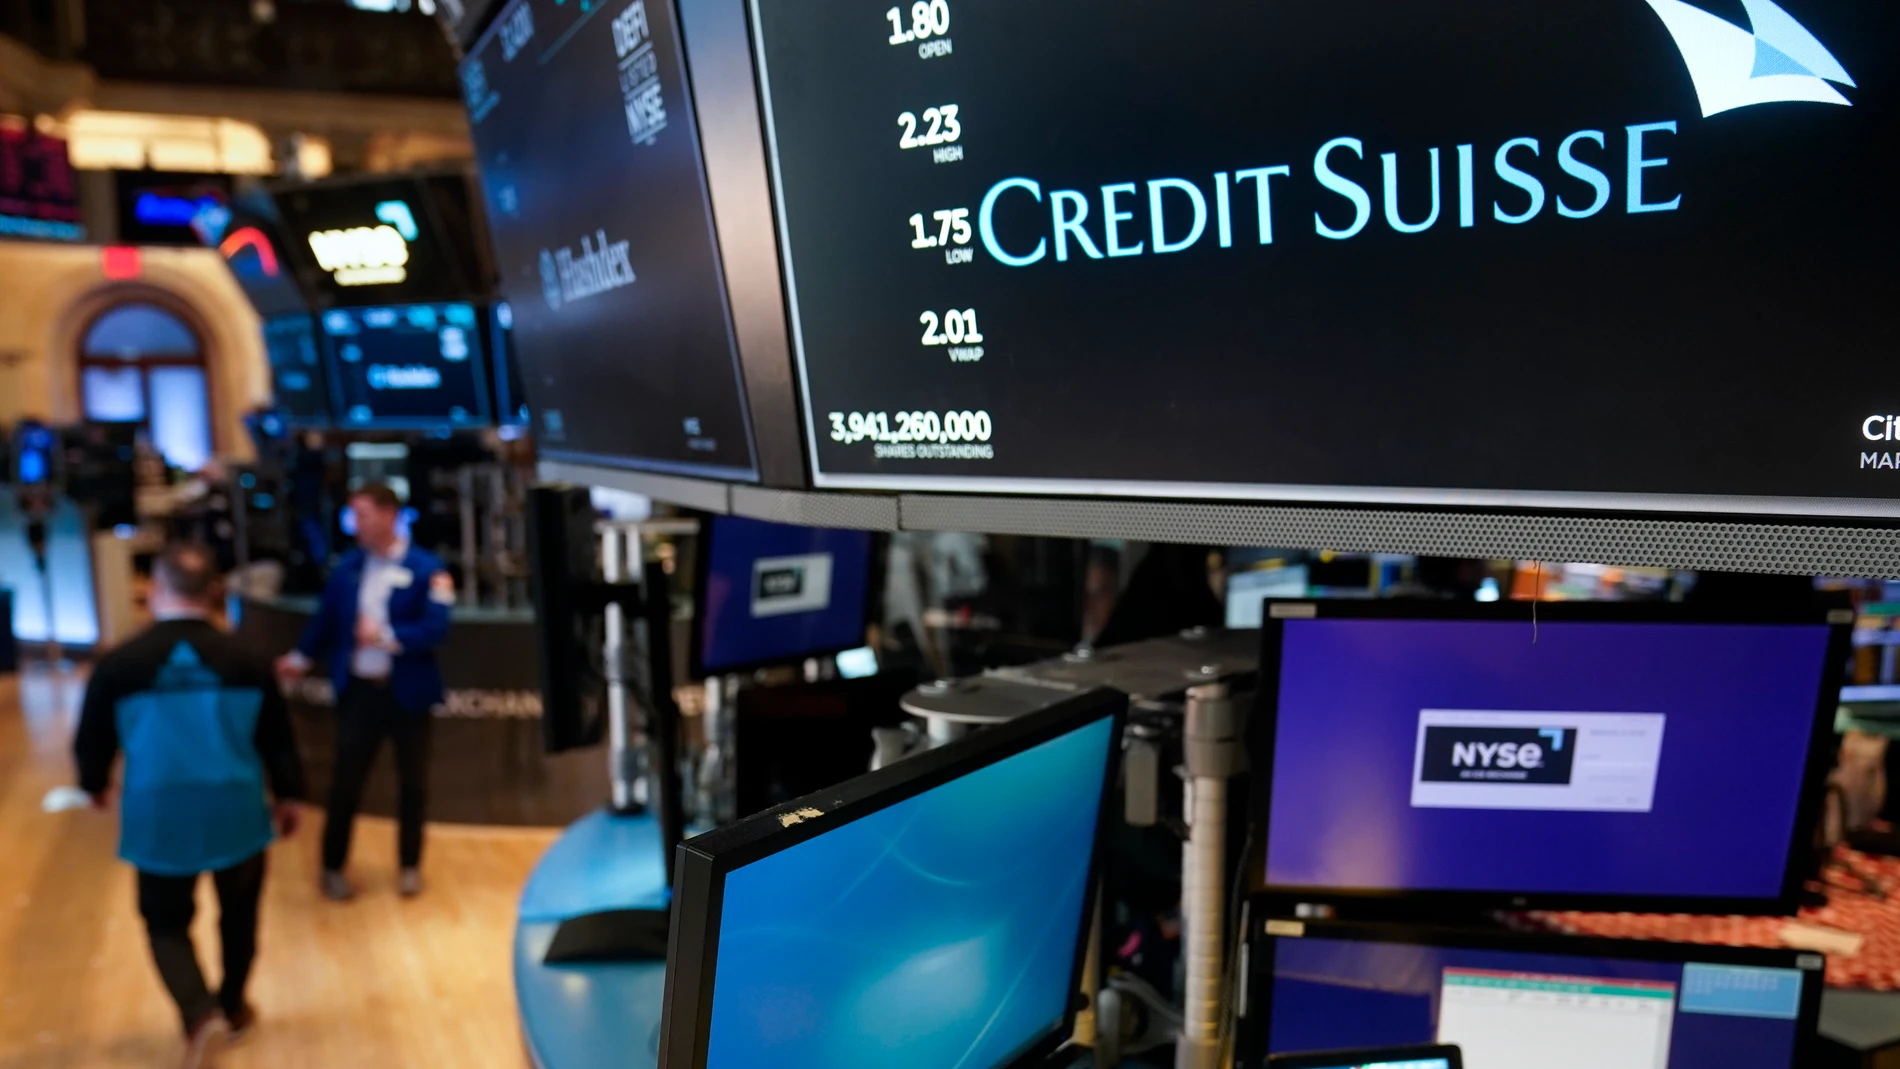 Una pantalla muestra el nombre del banco suizo Credit Suisse en la Bolsa de Nueva York